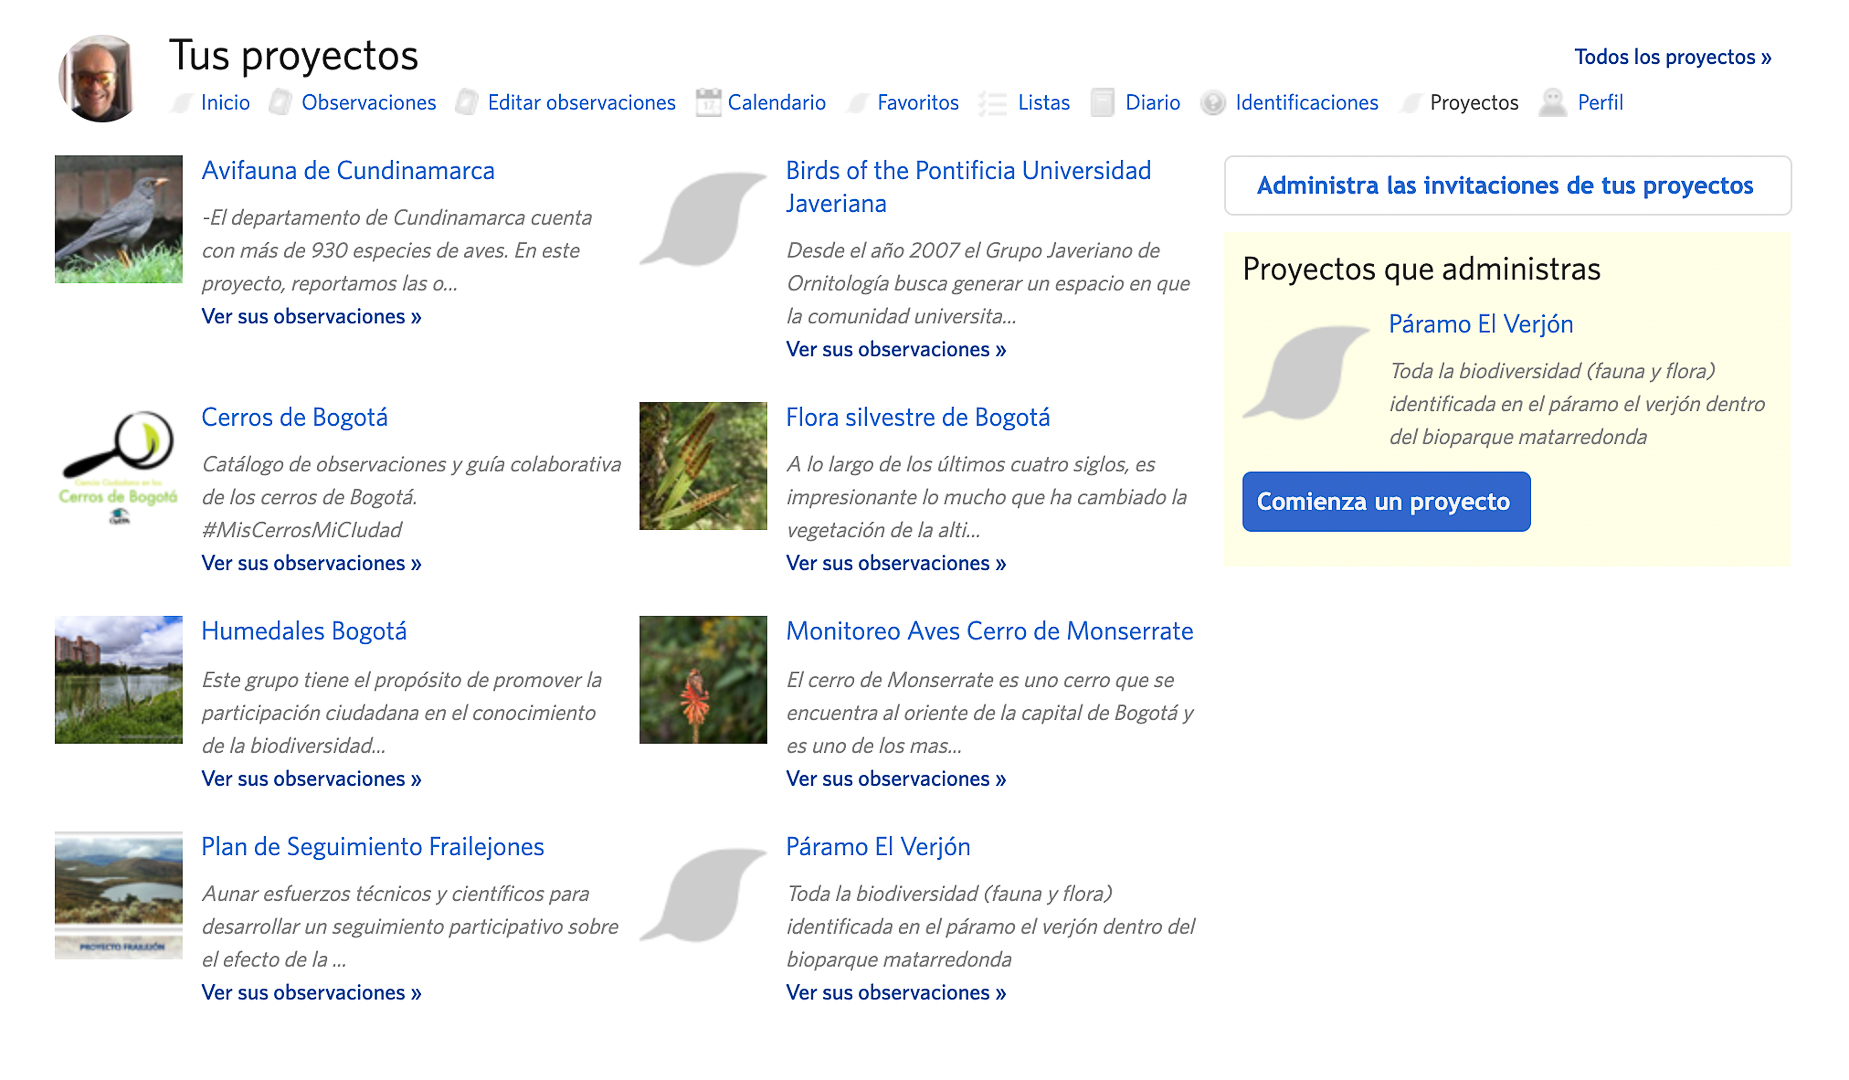 Proyectos registrados en perfil de usuario en iNaturalist